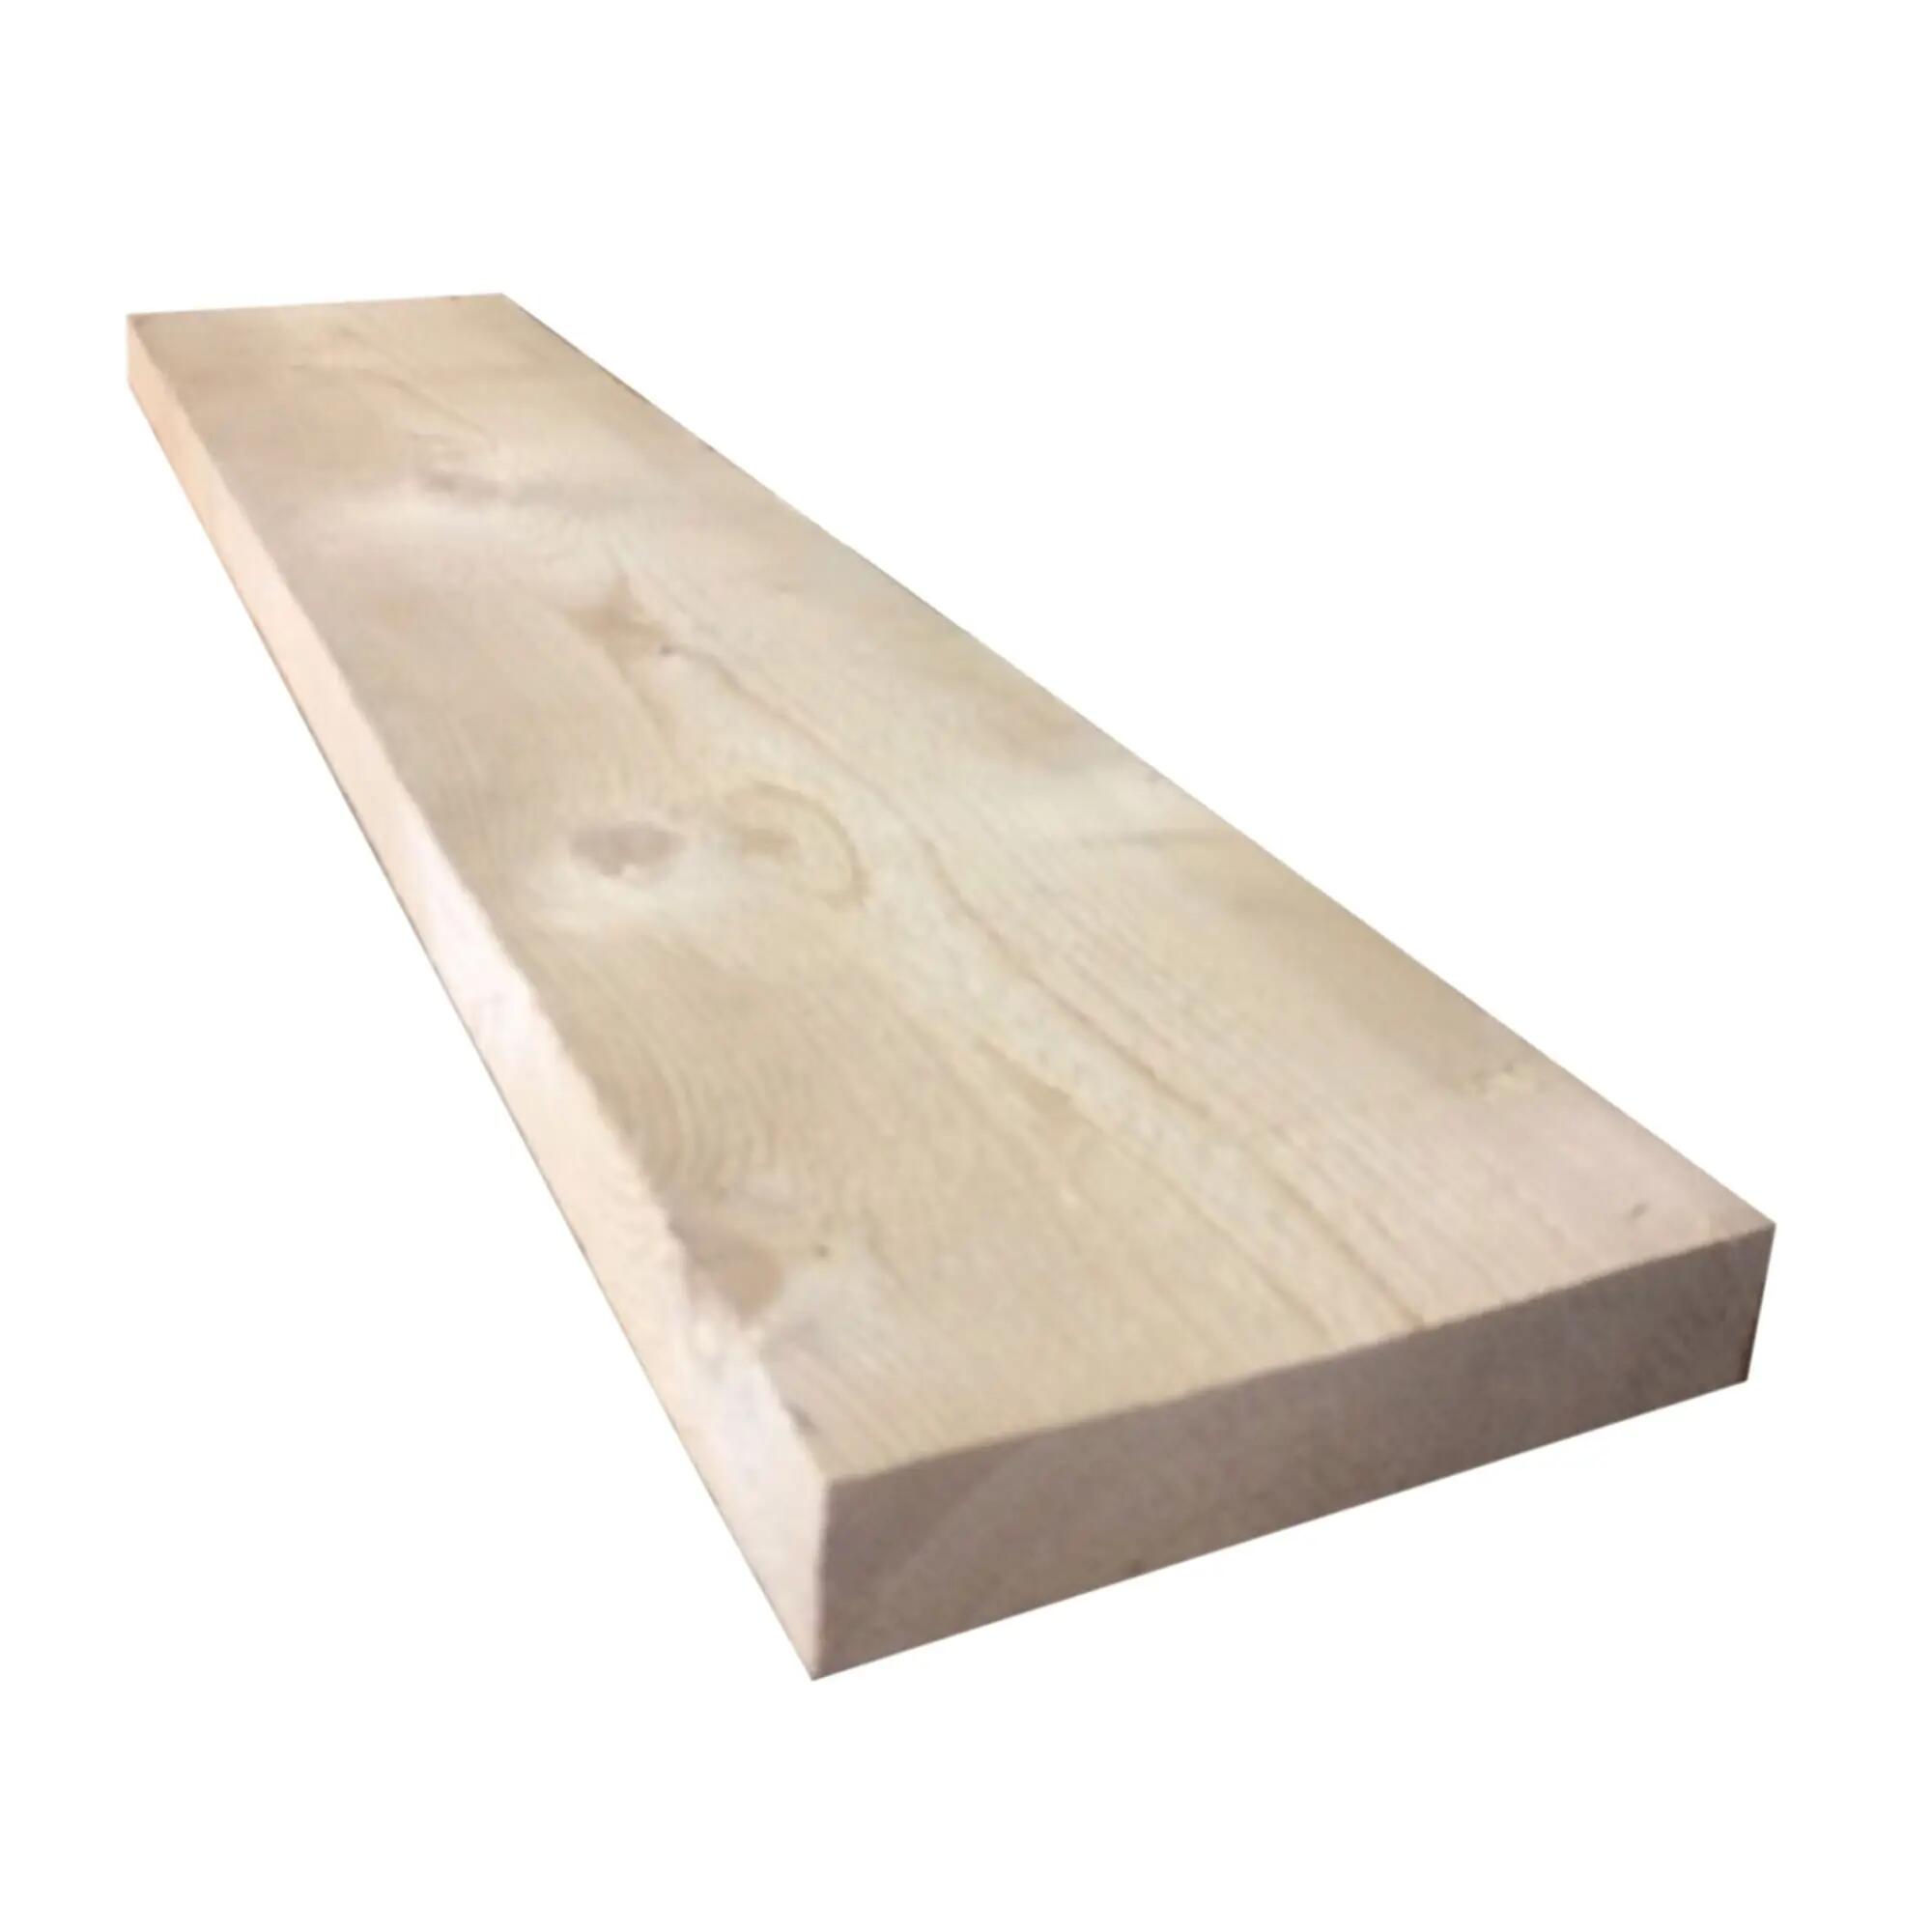 Asse in legno grezzo Oecoplan, 7x24 mm, 2 m acquistare da JUMBO